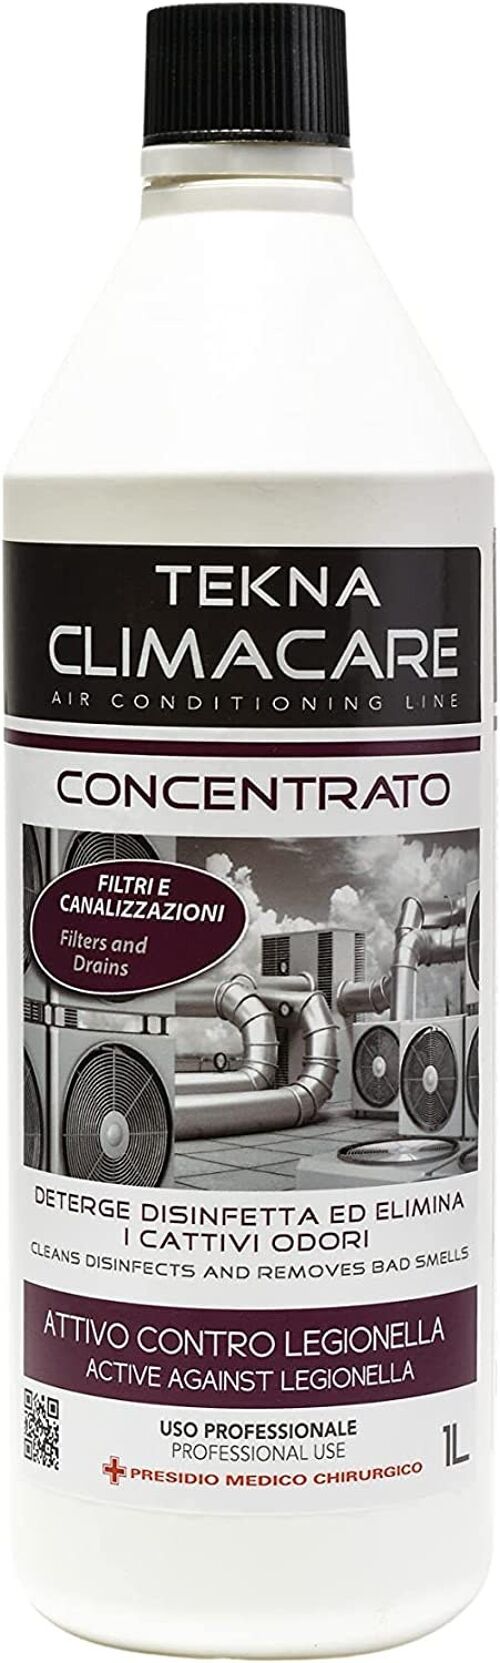 Tekna climacare concentrato 1 Lt. ideale pulizia filtri